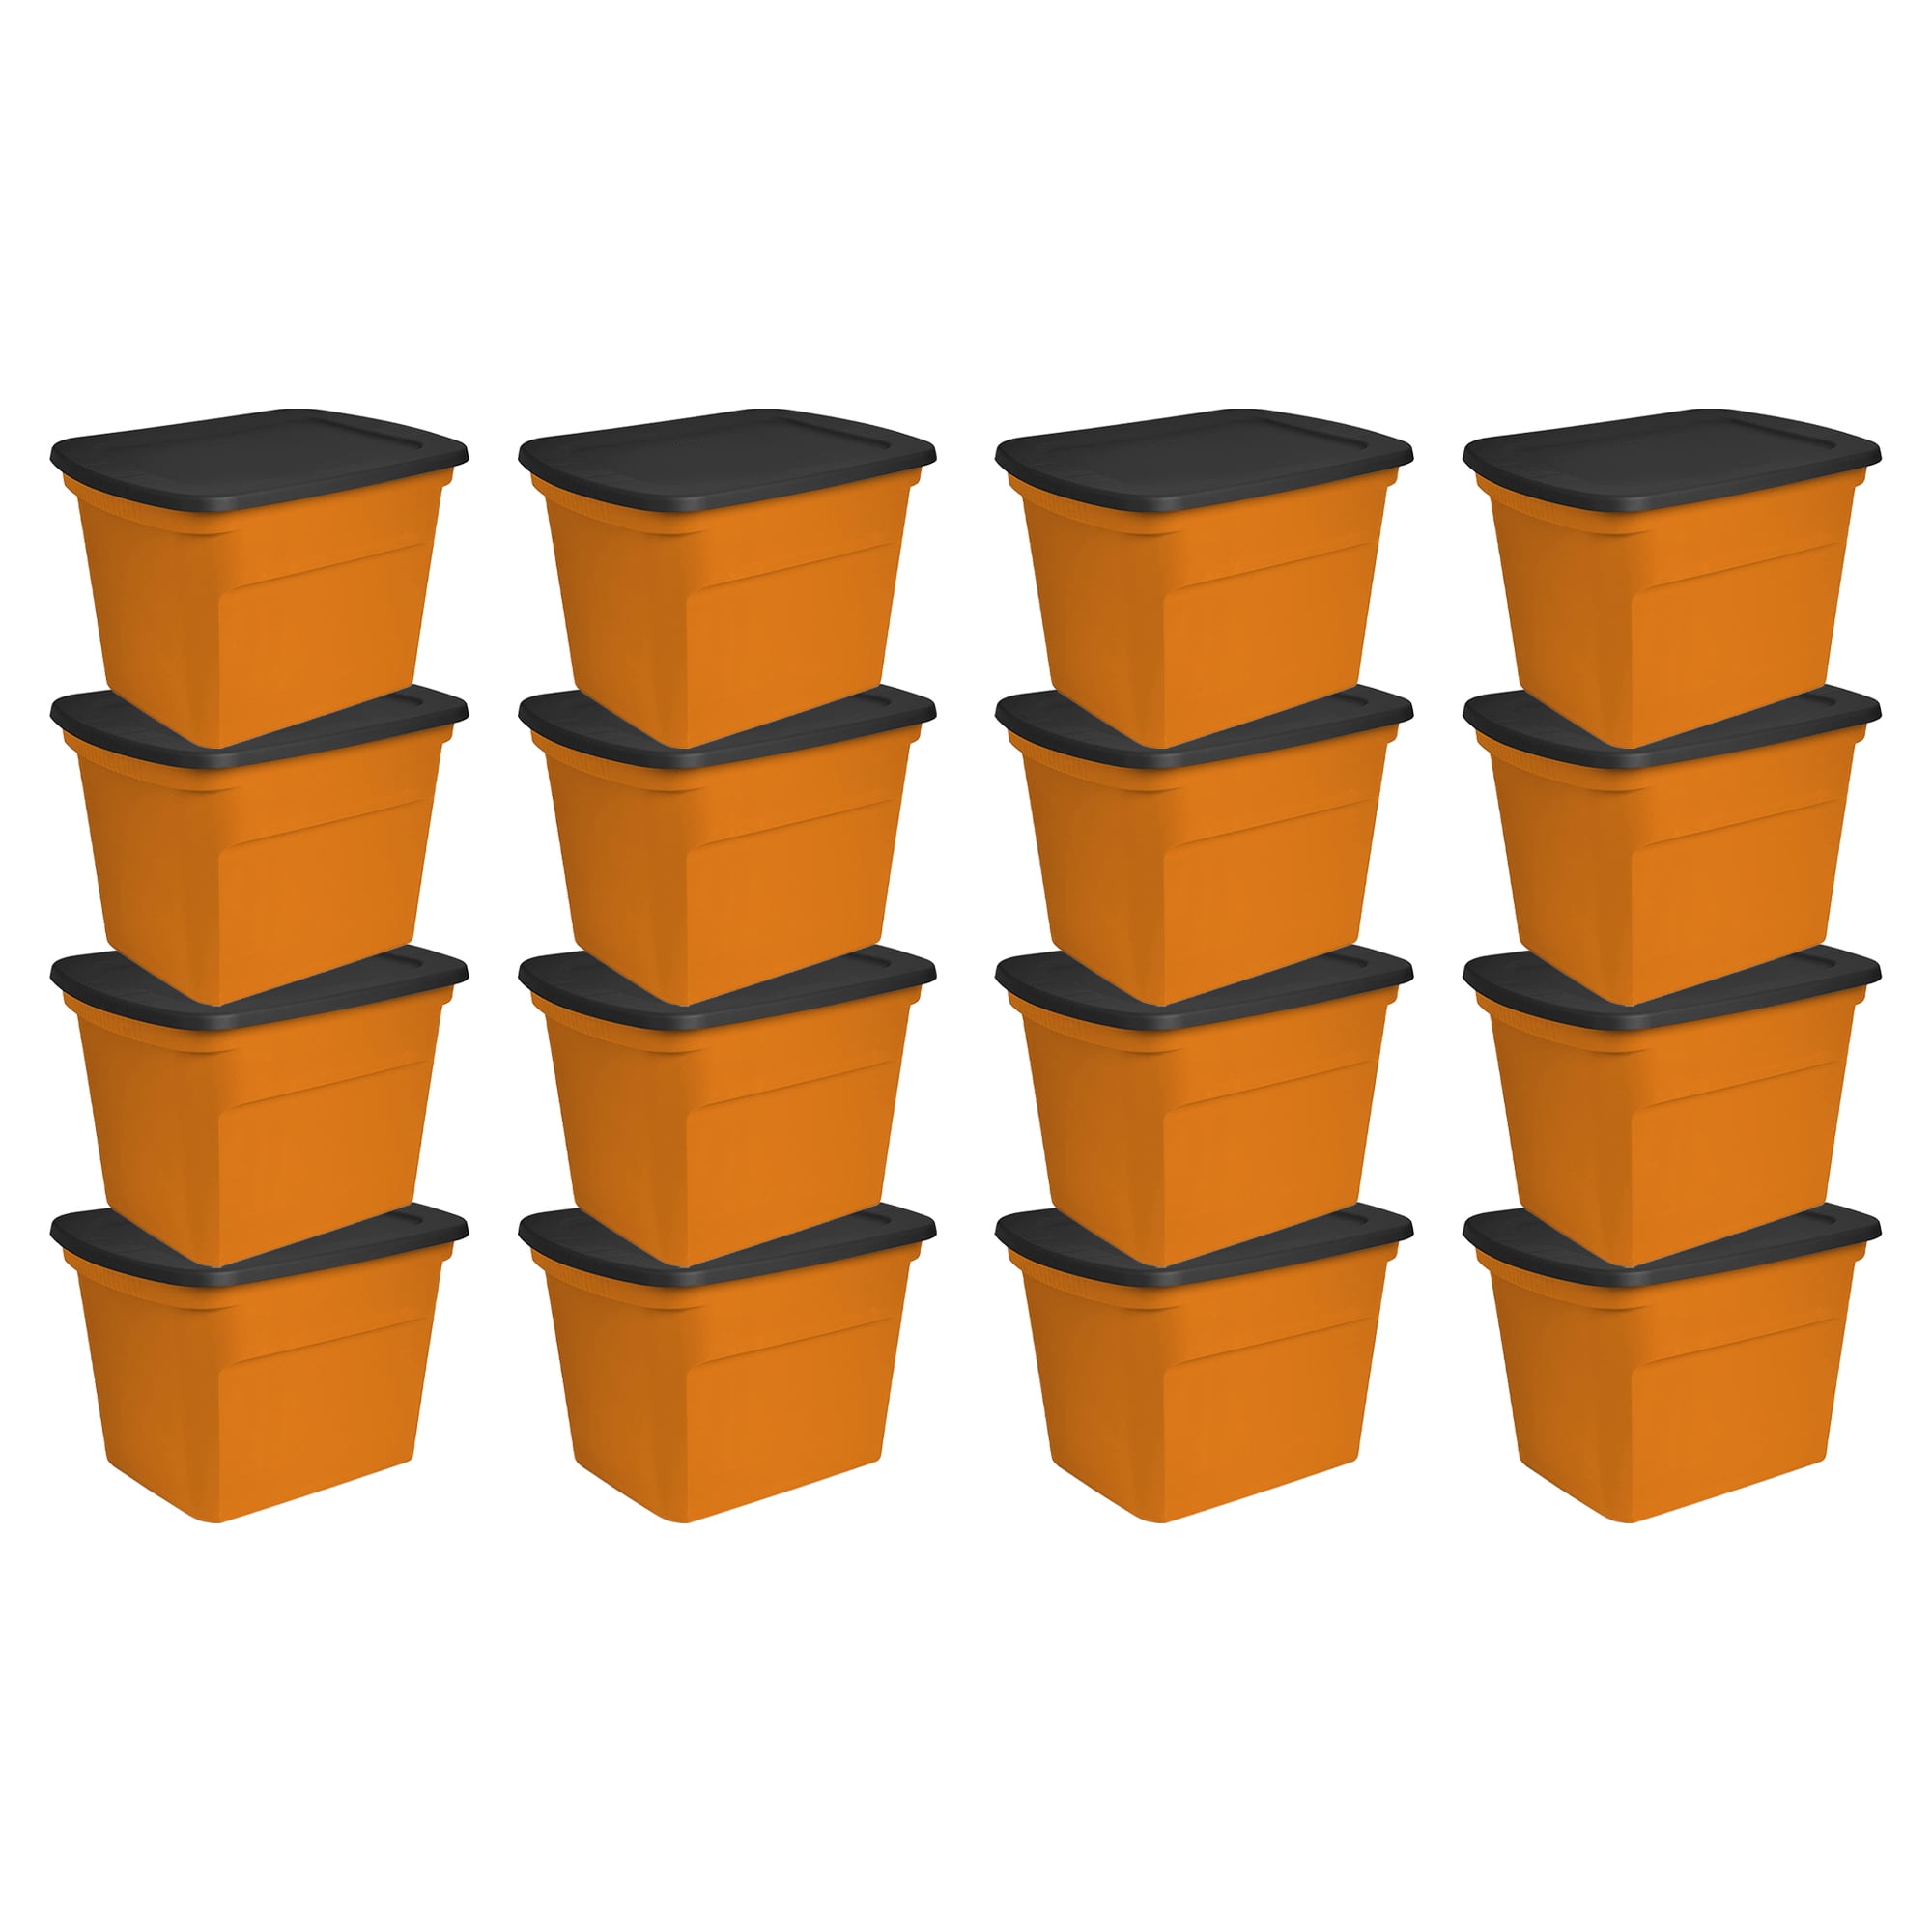 Sterilite 18 Gallon Orange Plastic Storage Container Bin Tote with Lid (16  Pack)